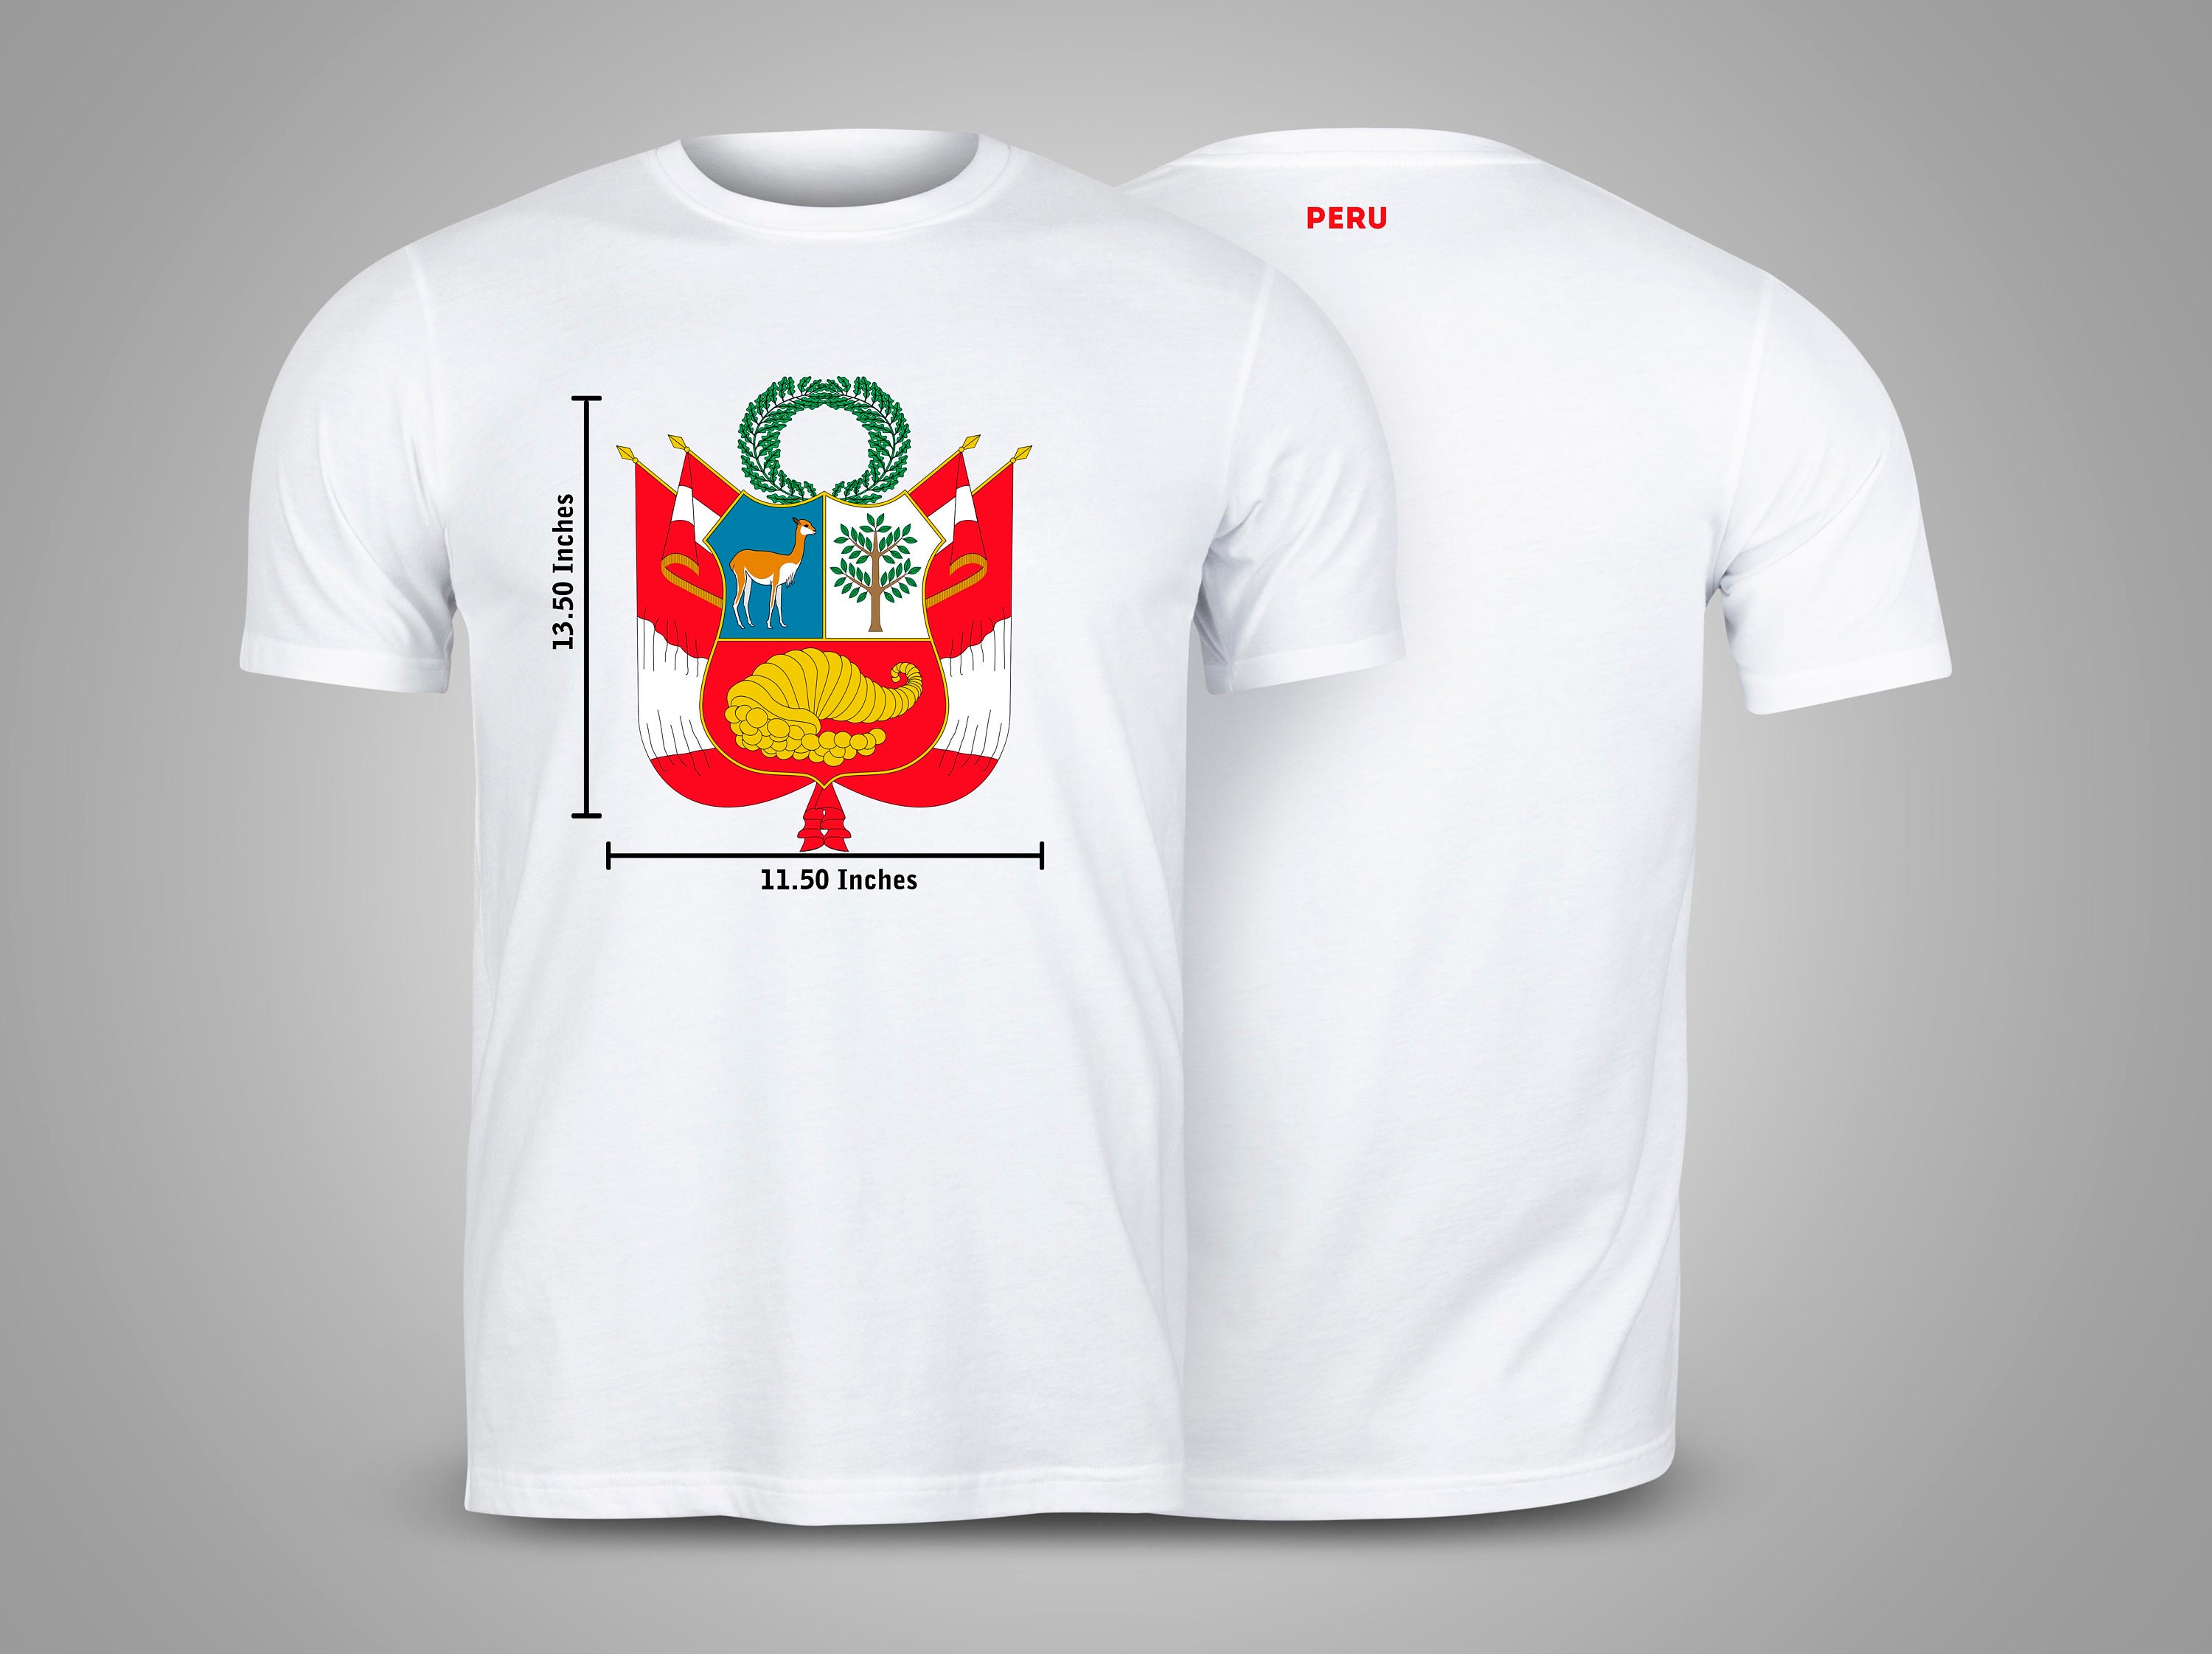 Perù Polo camicia peruviano Poloshirt calcio t-shirt 2018 World Cup collare calcio superiore Tee obiettivo Retro bandiera nazionale Champions Mens nuovo Abbigliamento Abbigliamento uomo Camicie e magliette Polo 